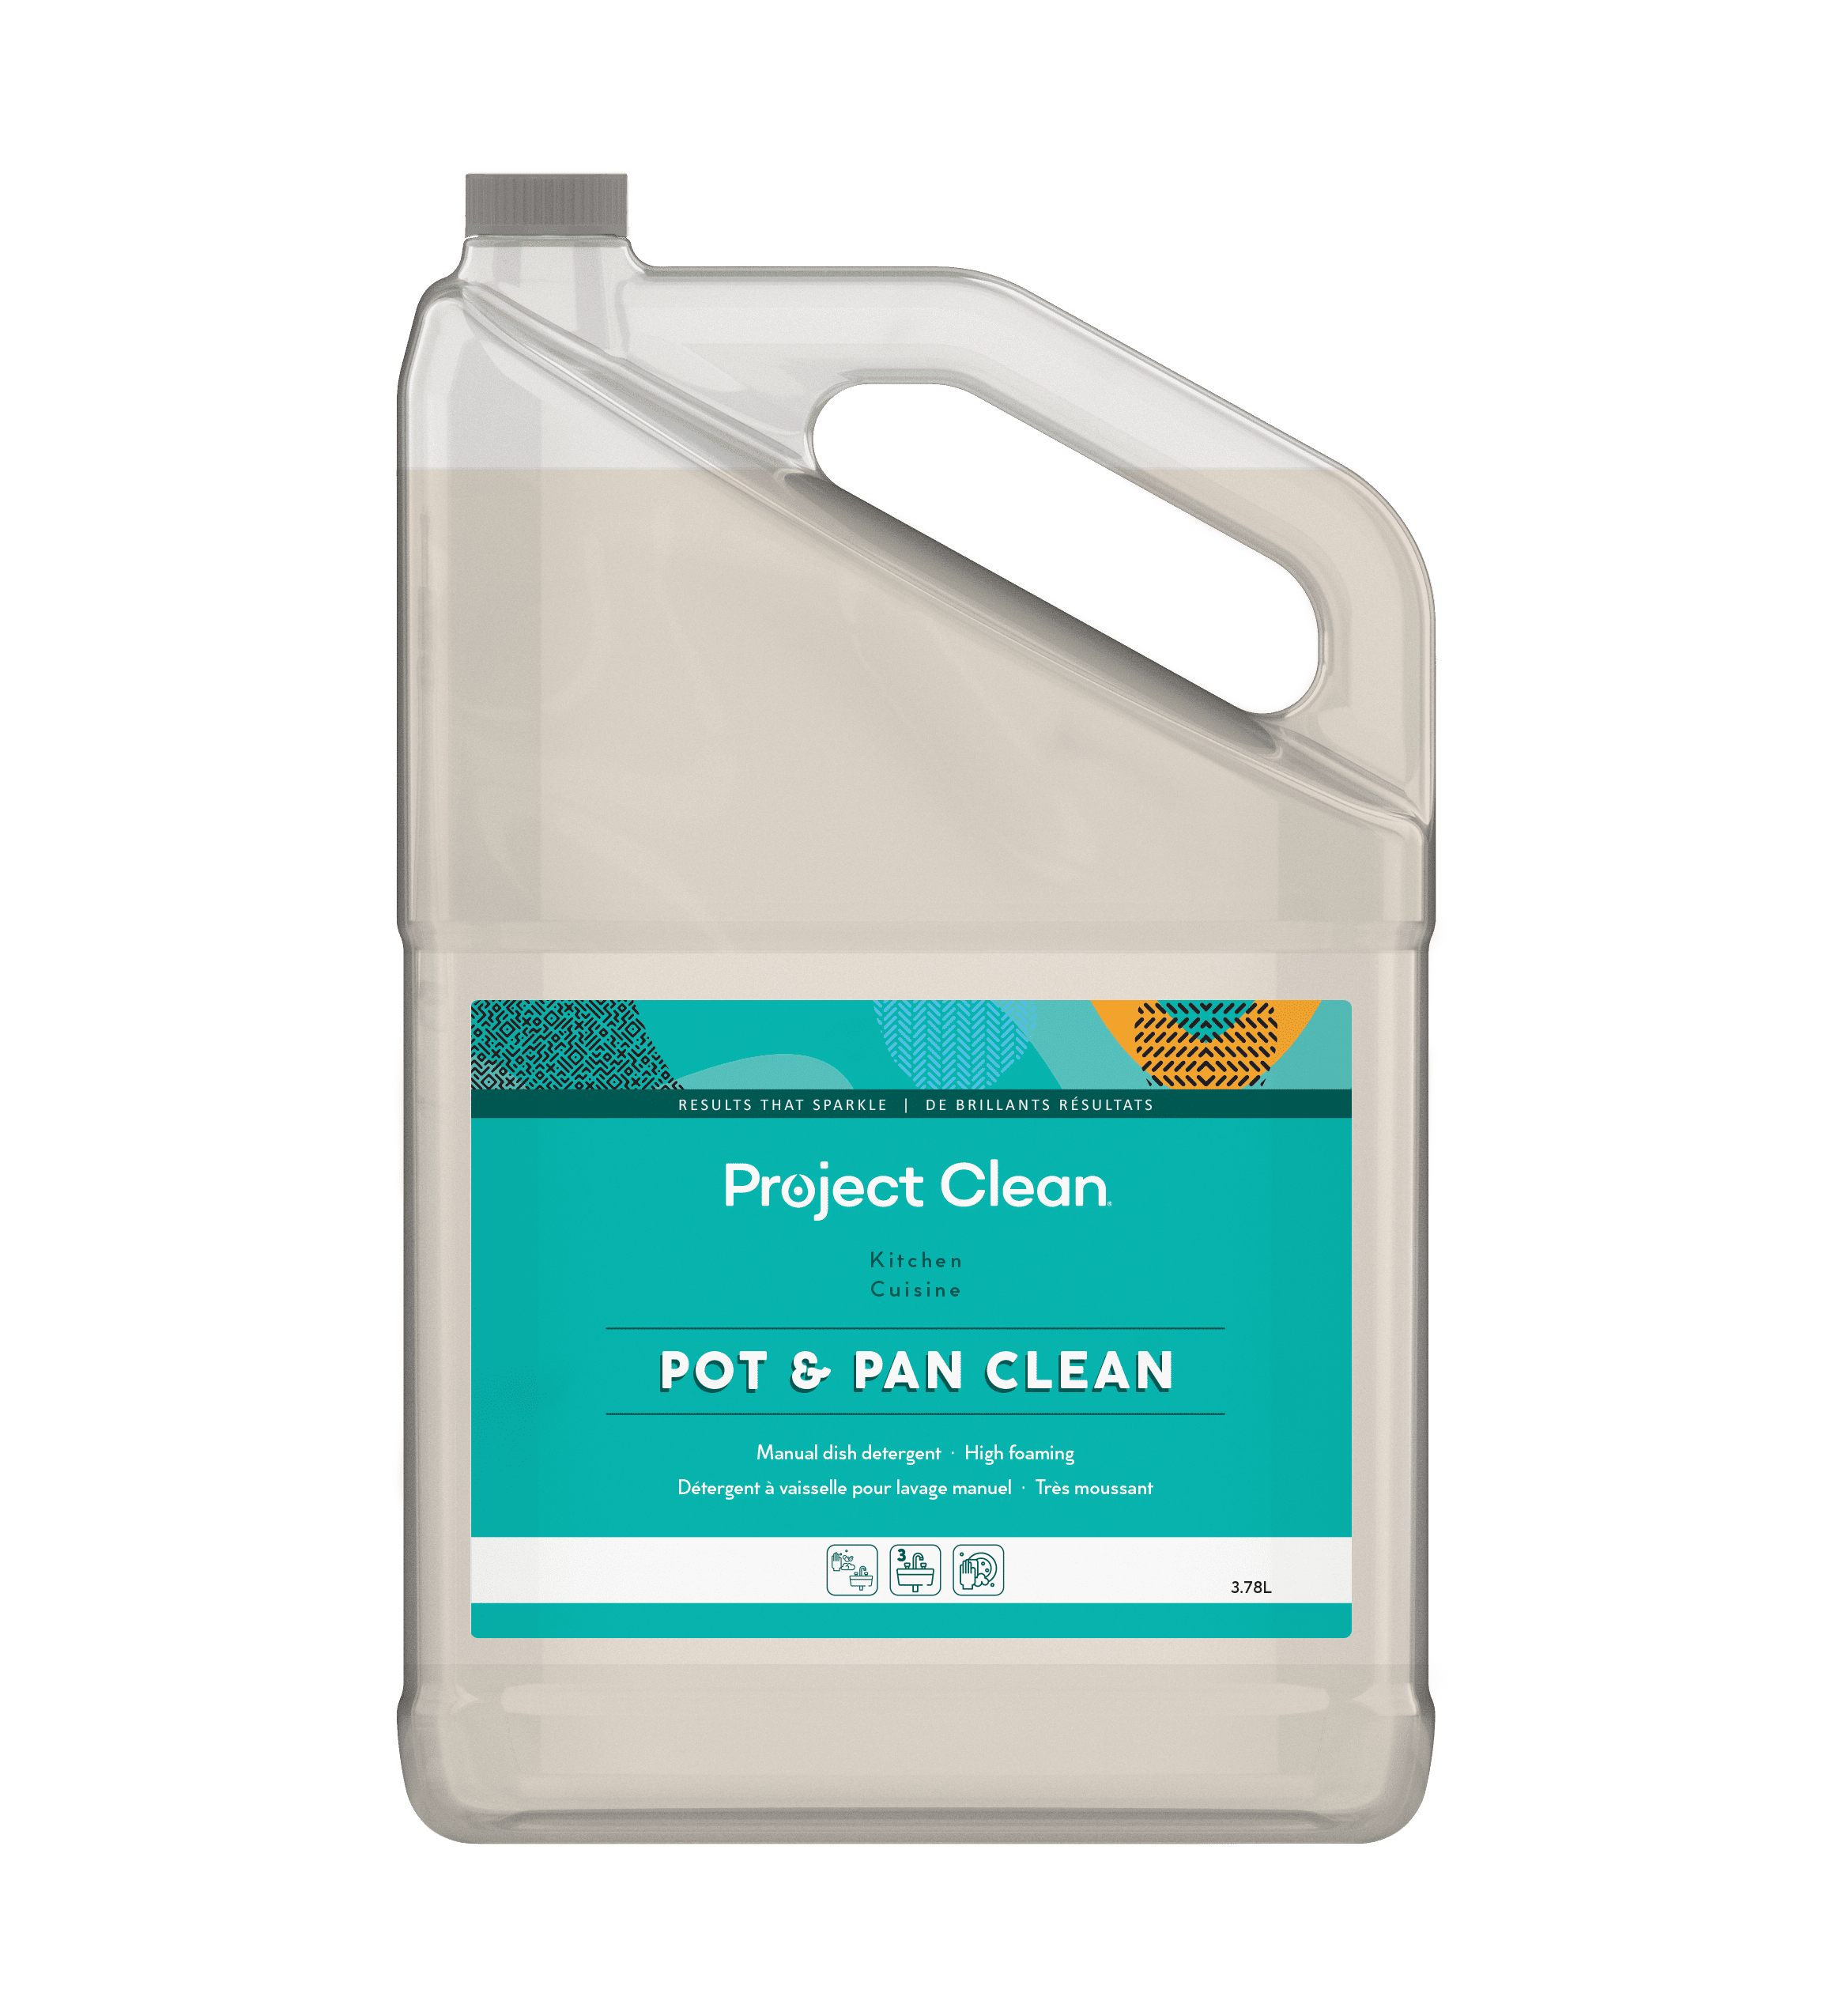 Pot & Pan Clean - Project Clean